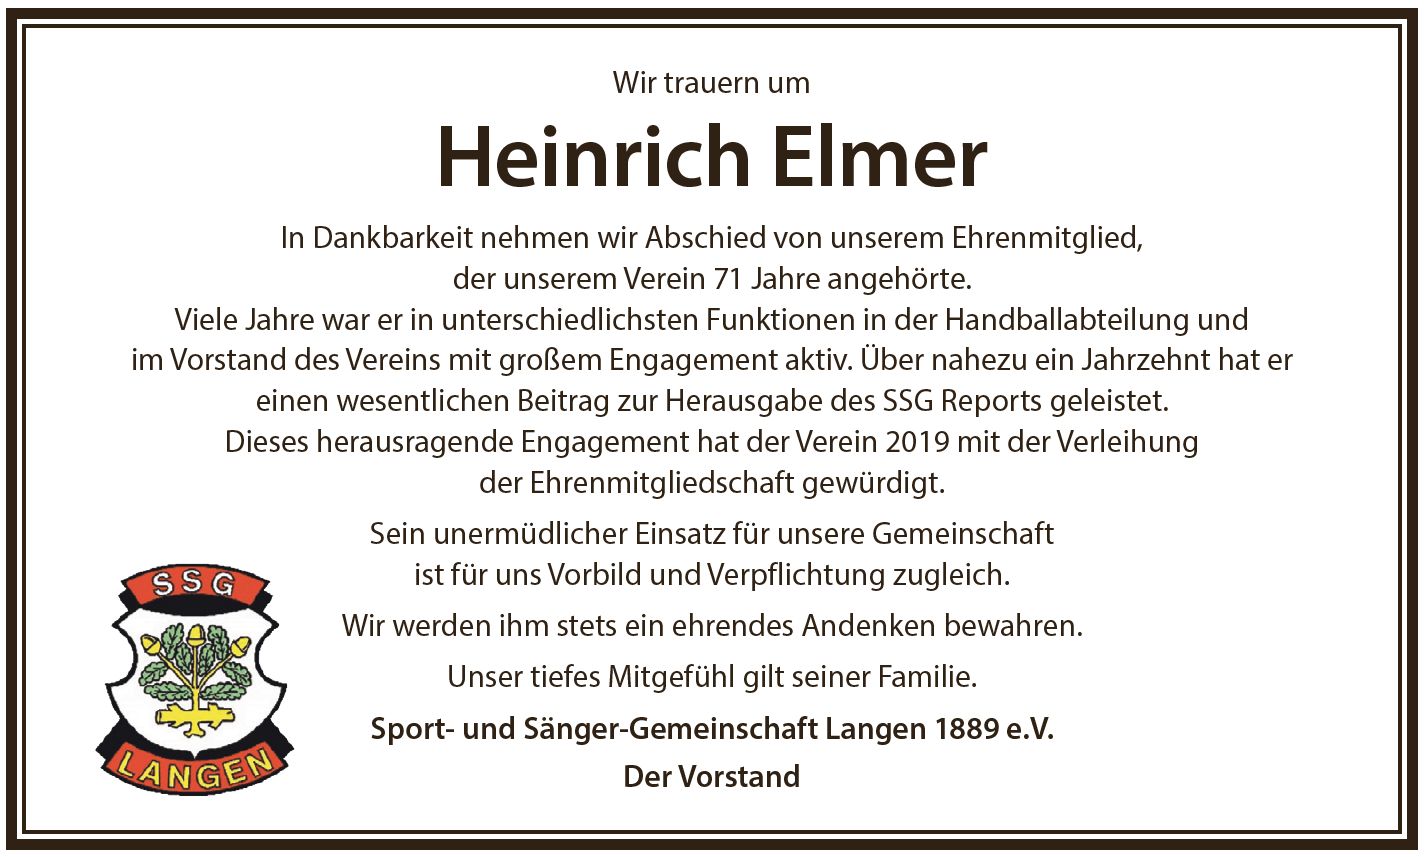 Traueranzeige zum Tod unseres Ehrenmitglieds Heinrich Elmer